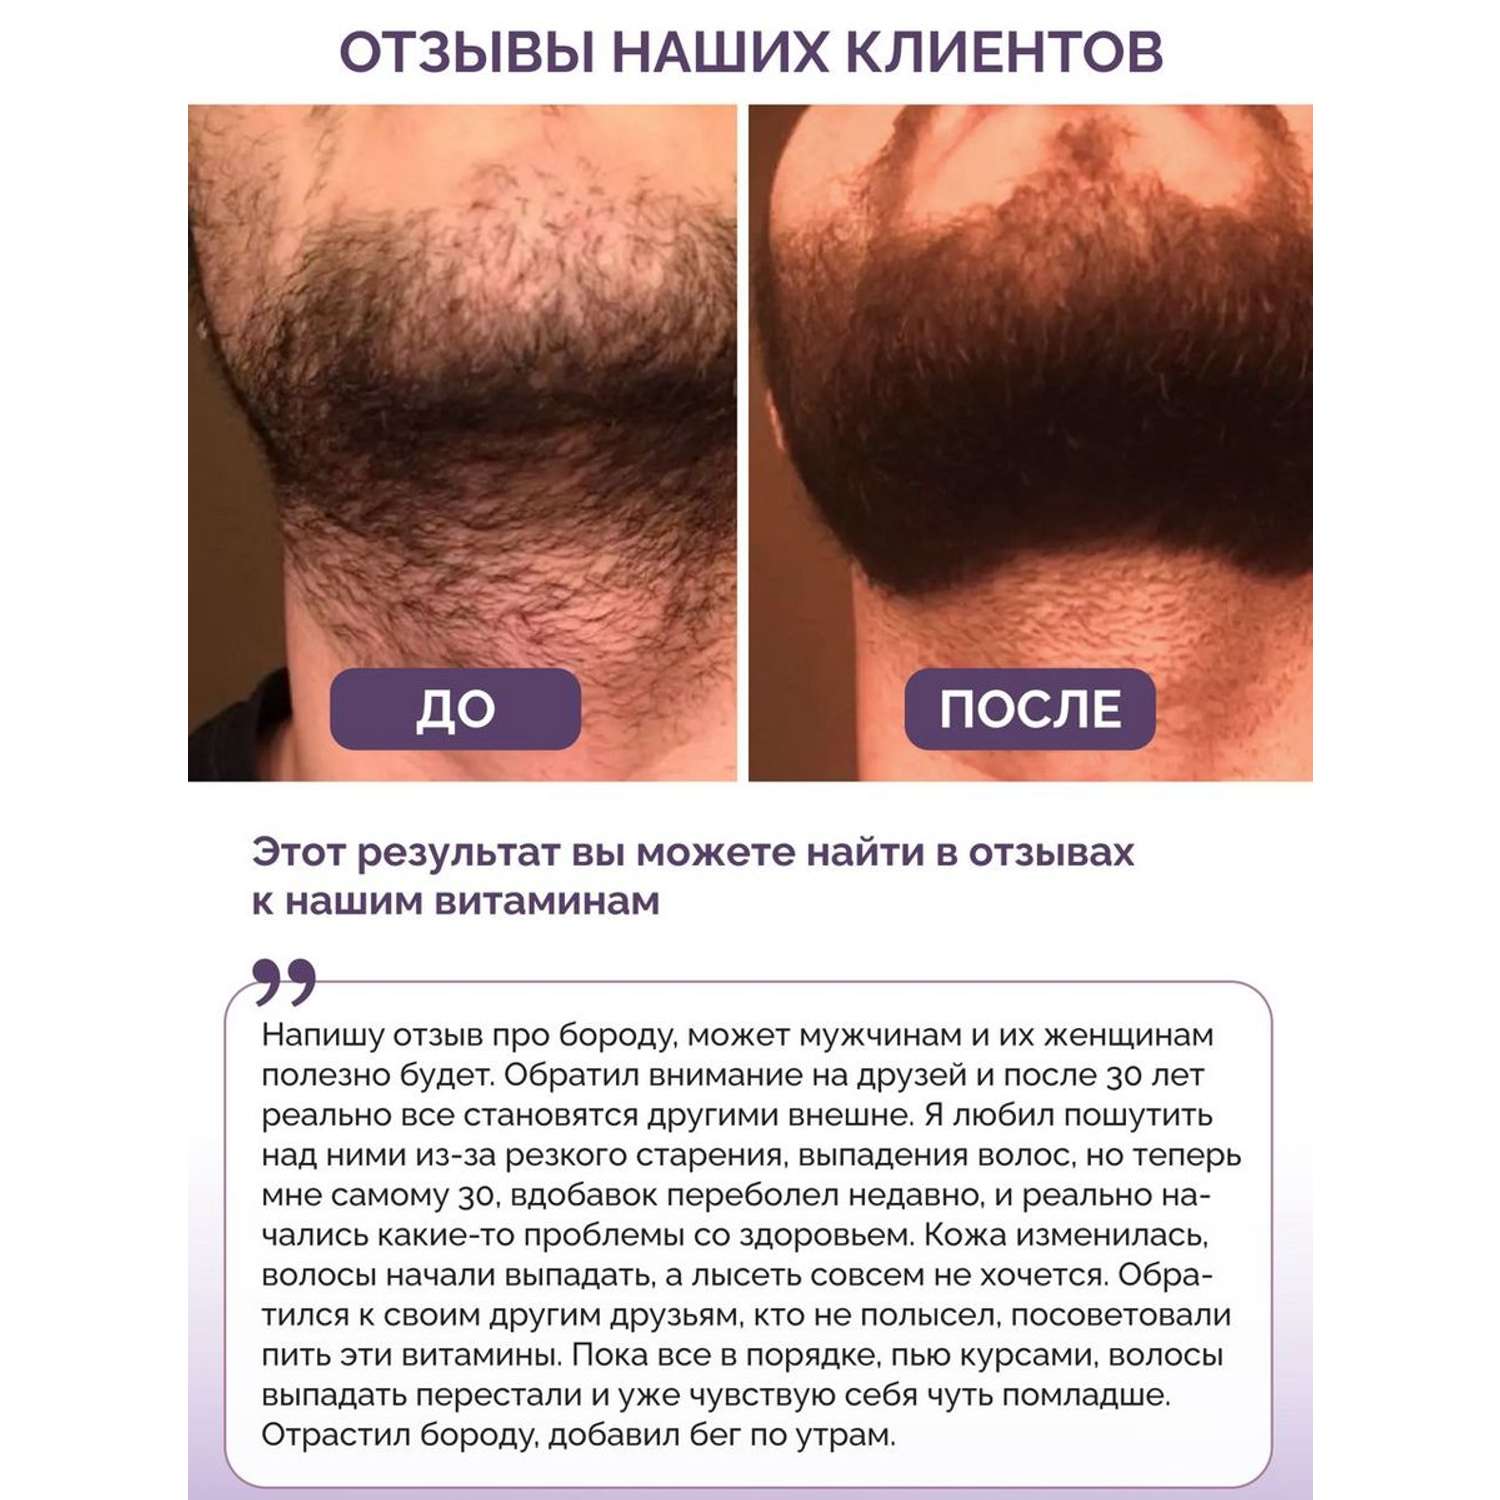 Витамины для волос кожи ногтей BIOTTE hair nails skin витаминно-минеральный комплекс БАД 180 капсул - фото 2